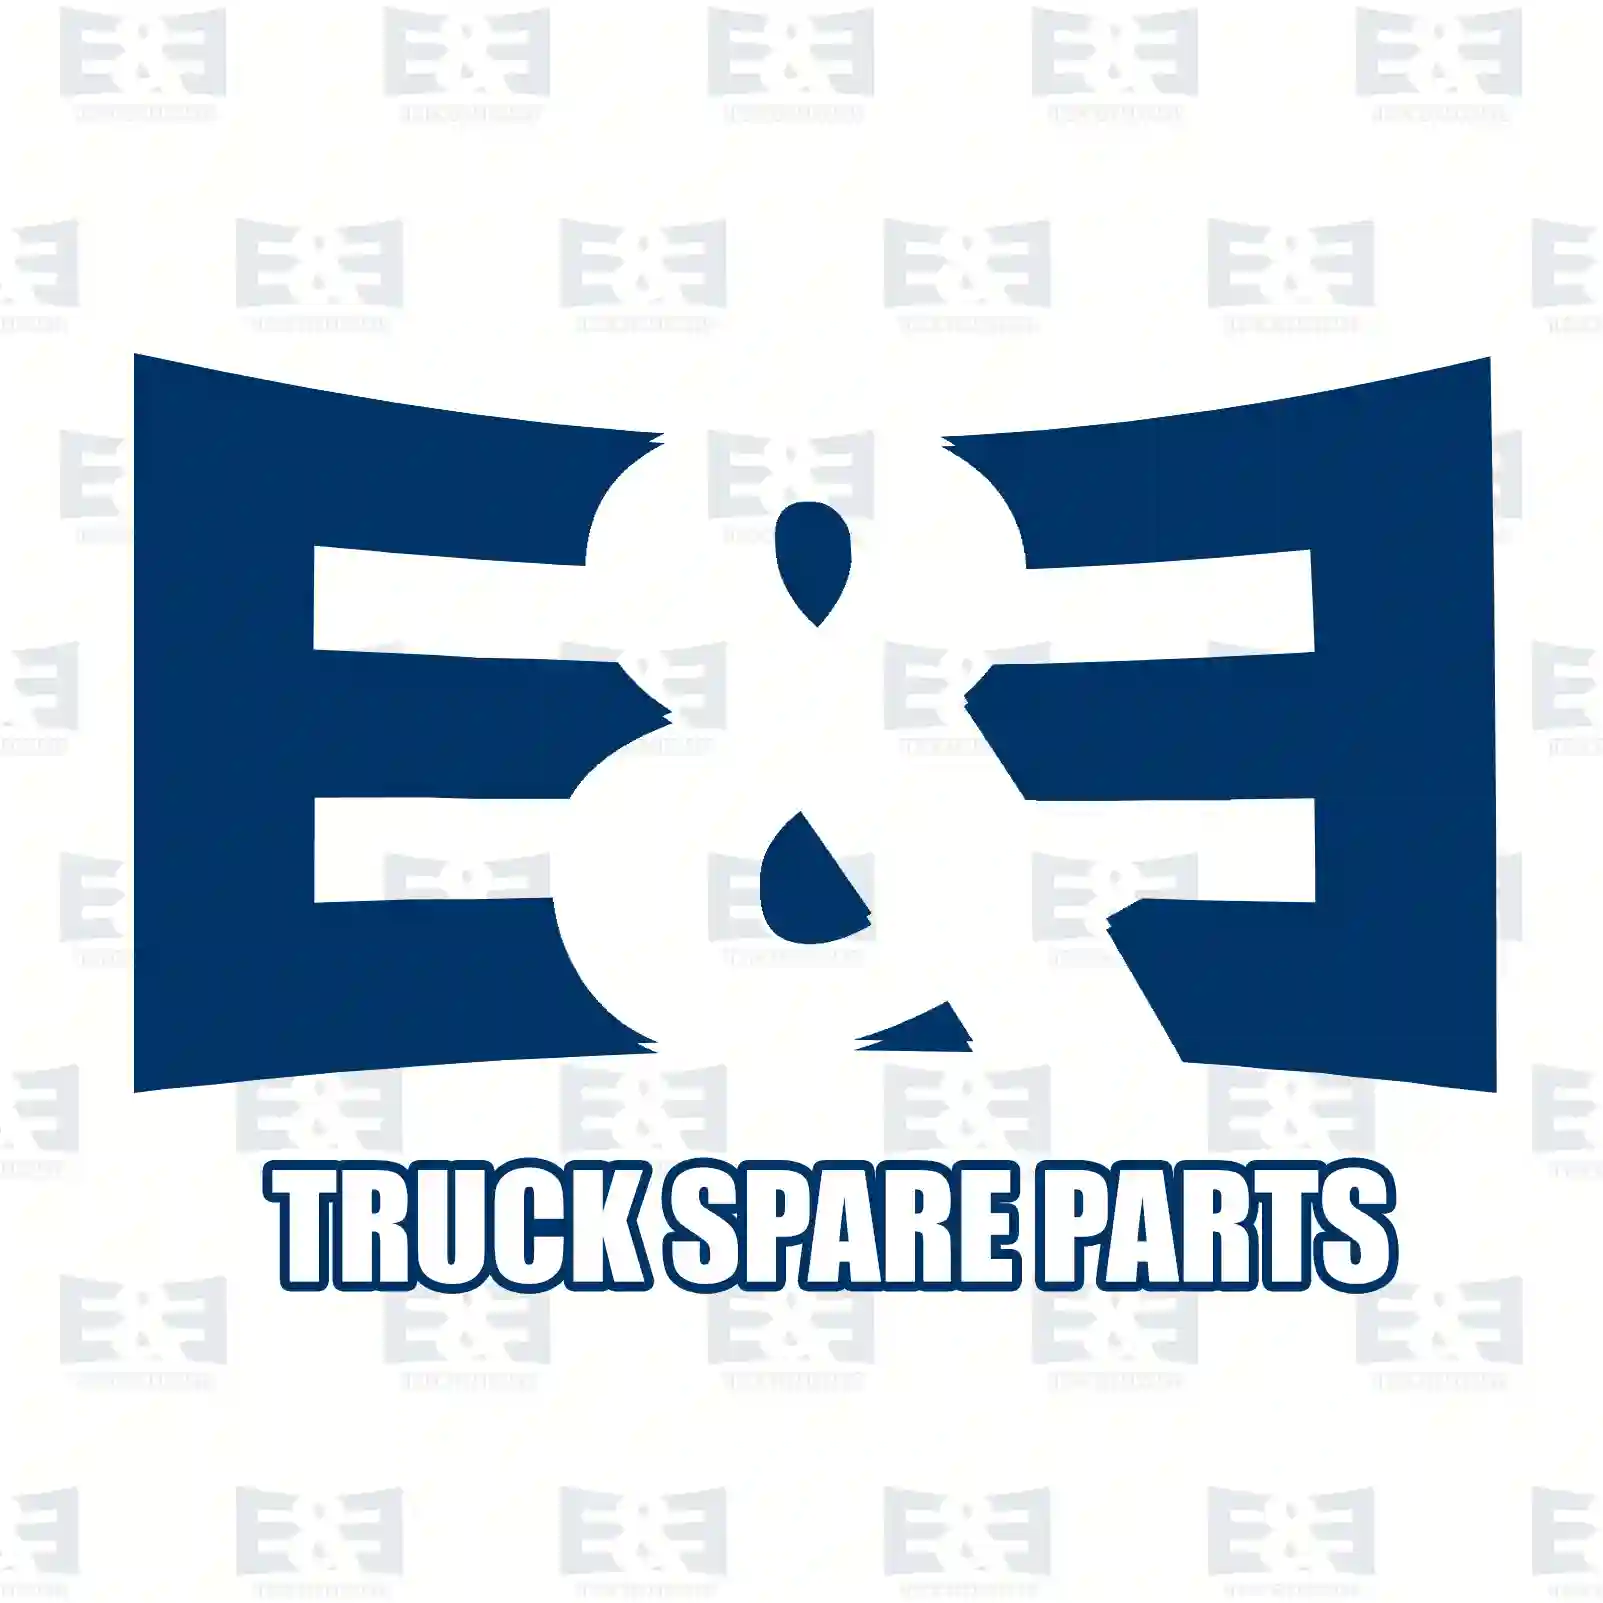 Brake caliper, right, 2E2297263, 2E0615424A, 0034207483, 2E0615424A, 2E0615424A, 2E0615424A ||  2E2297263 E&E Truck Spare Parts | Truck Spare Parts, Auotomotive Spare Parts Brake caliper, right, 2E2297263, 2E0615424A, 0034207483, 2E0615424A, 2E0615424A, 2E0615424A ||  2E2297263 E&E Truck Spare Parts | Truck Spare Parts, Auotomotive Spare Parts